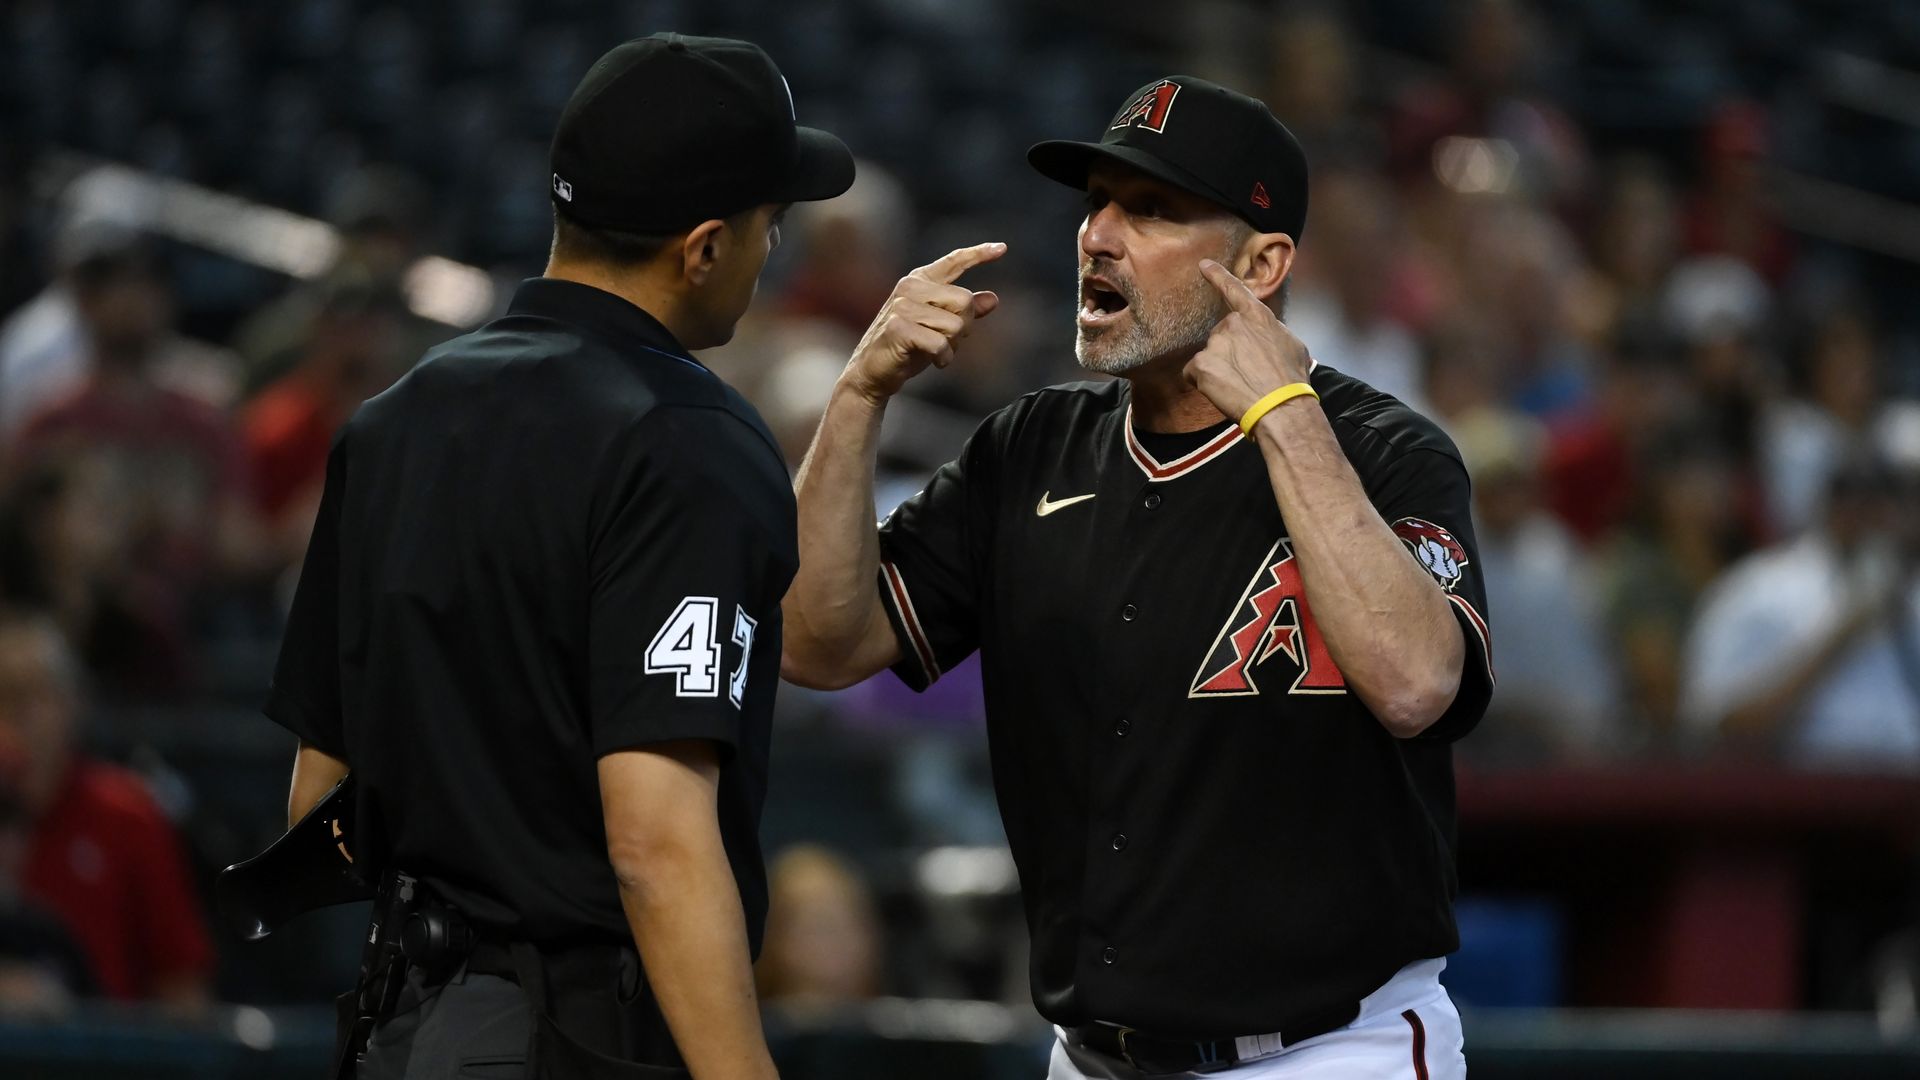 A baseball coach yelling at an umpire.